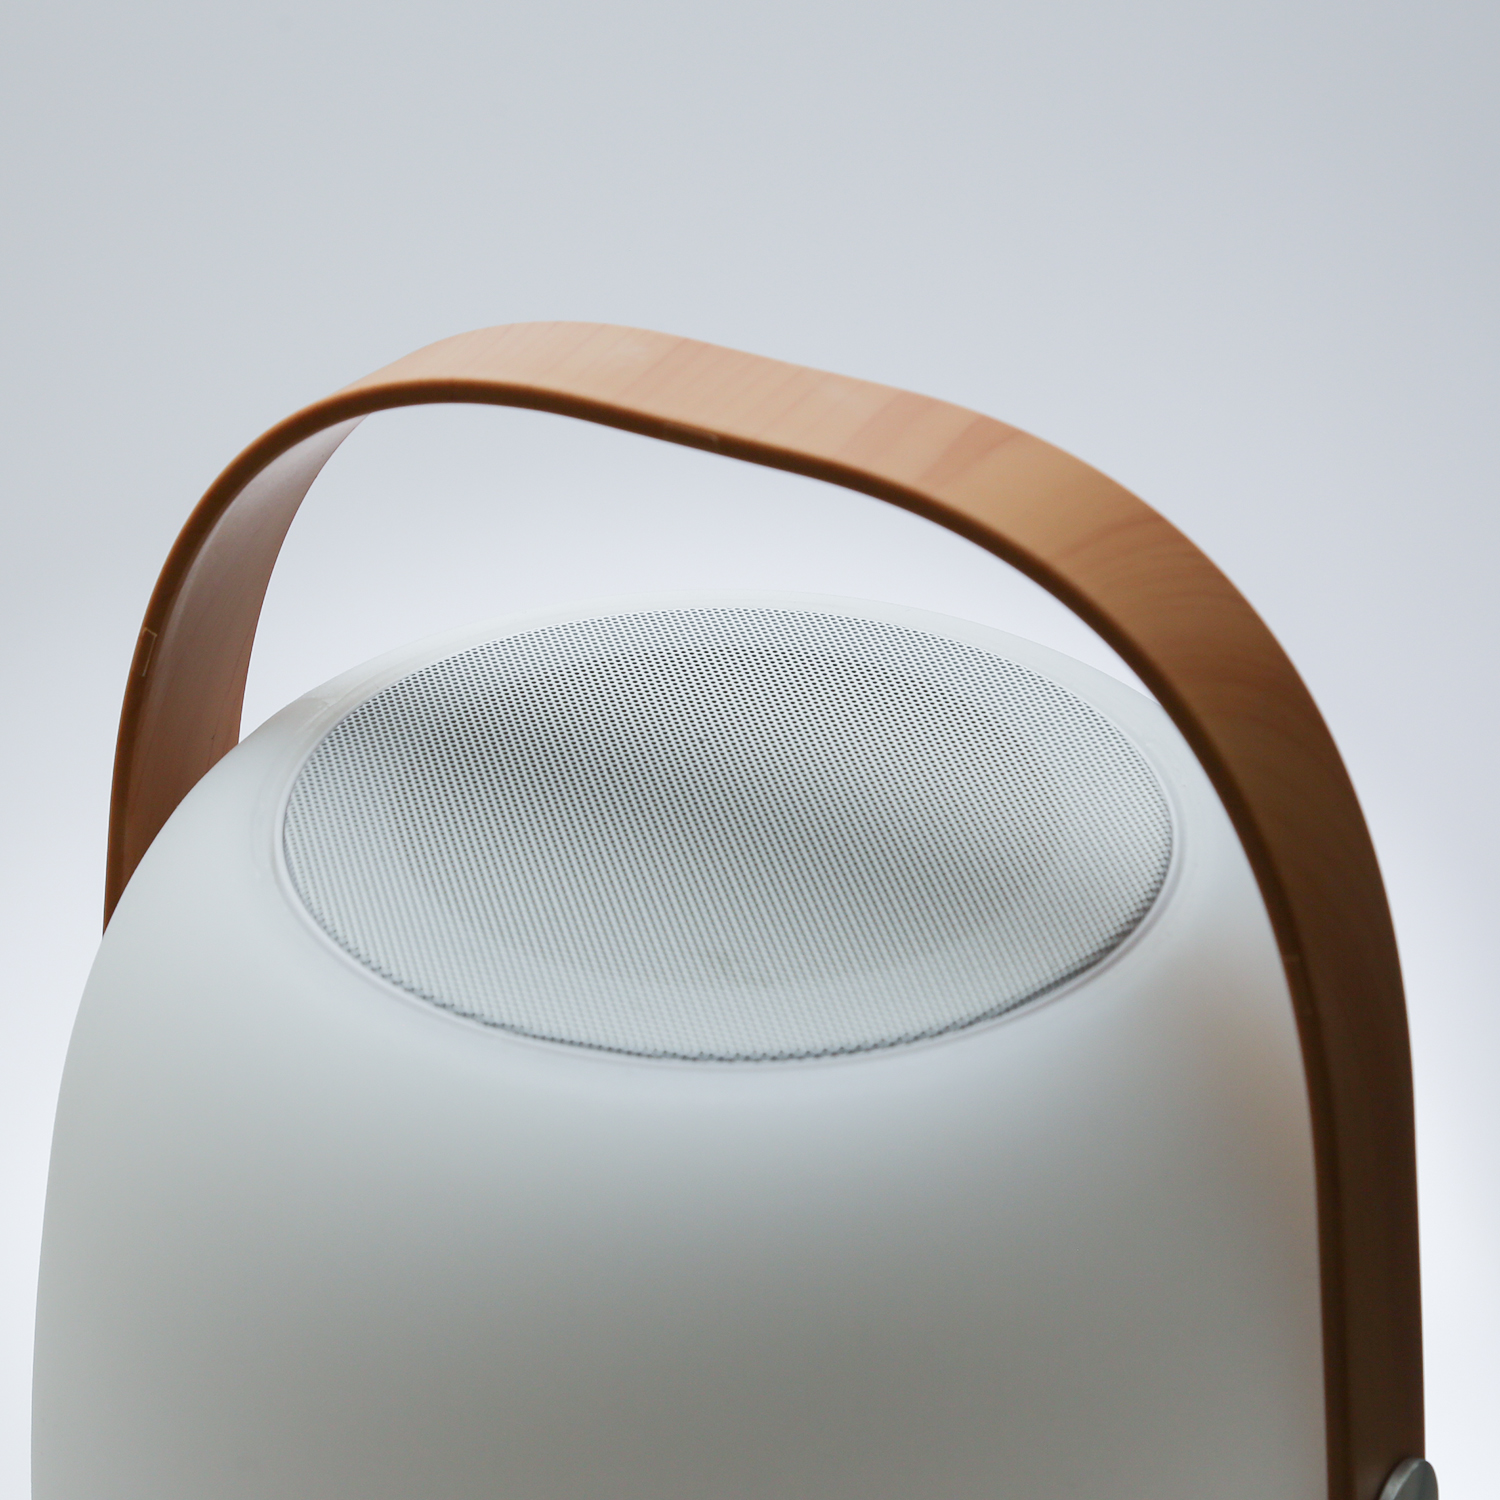 LED Tischleuchte mit Lautsprecher - Bluetooth - 6 warmweiße LED - H: 27cm - für Garten, Balkon